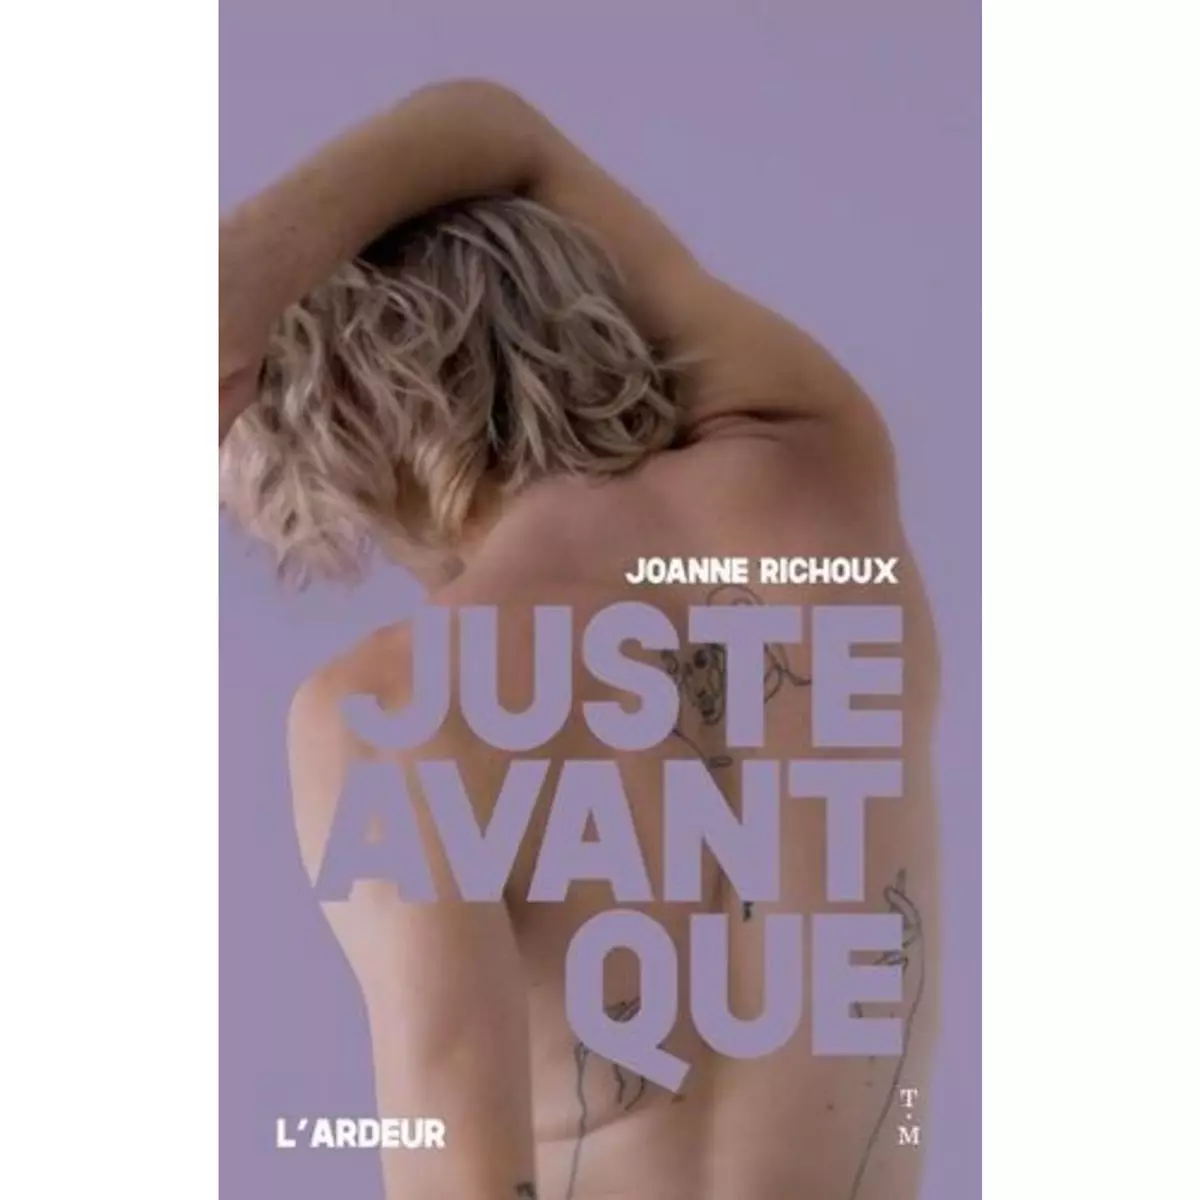  JUSTE AVANT QUE, Richoux Joanne